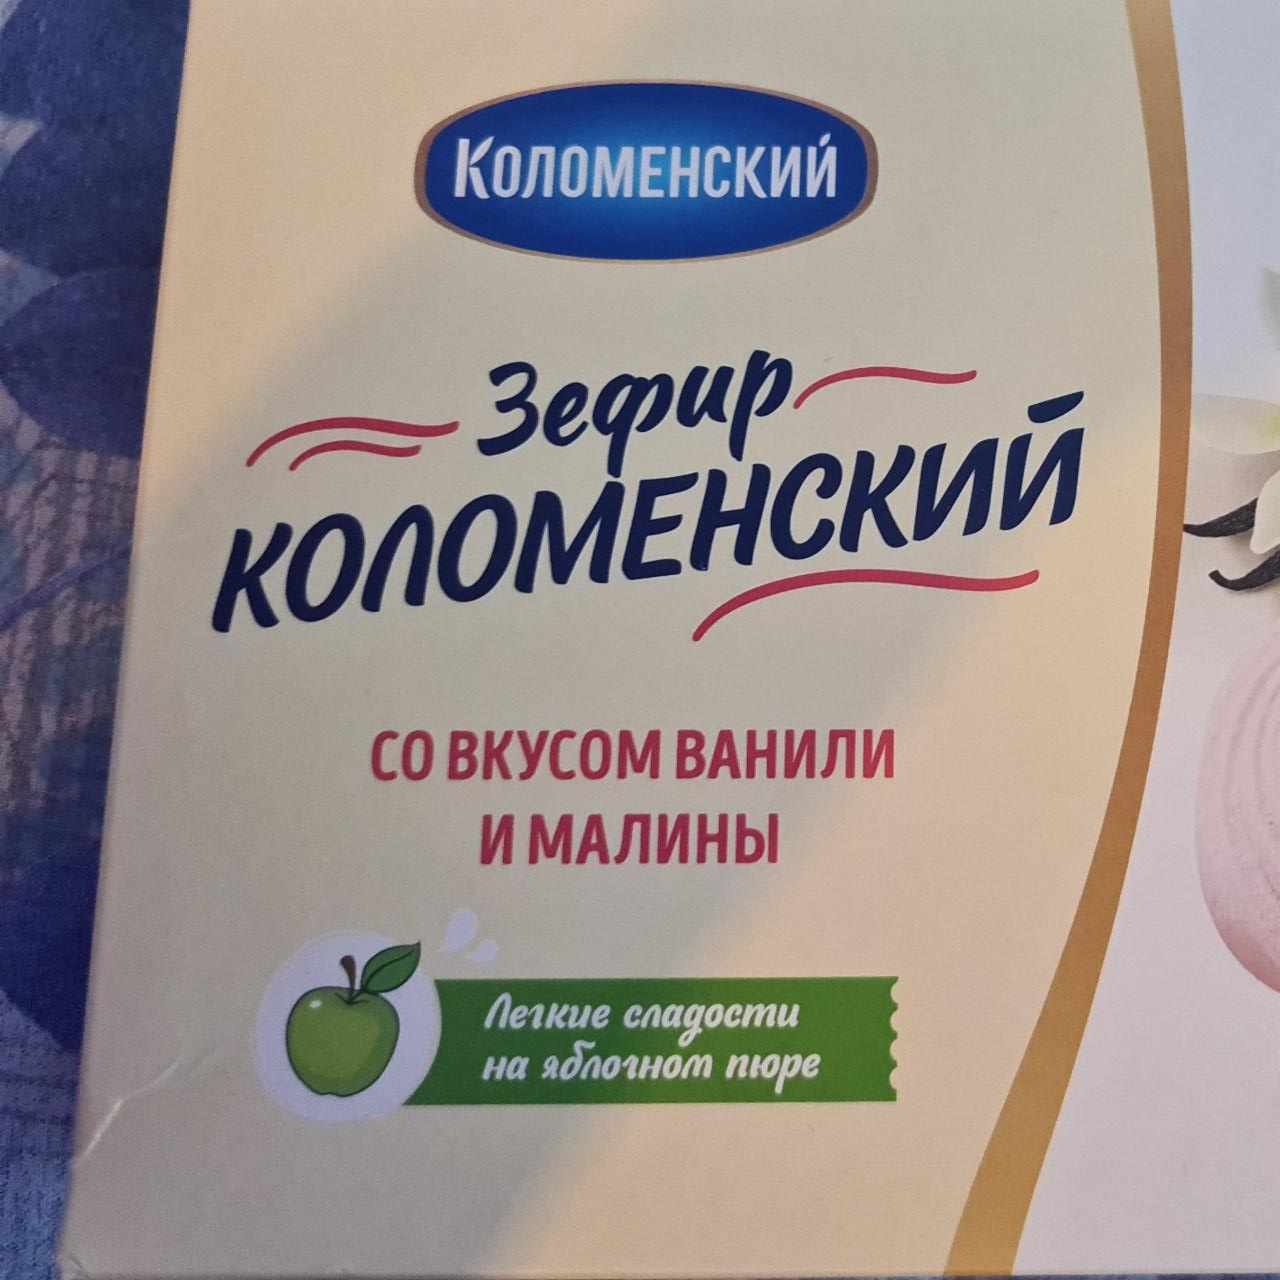 Фото - Зефир со вкусом ванили и малины Коломенский